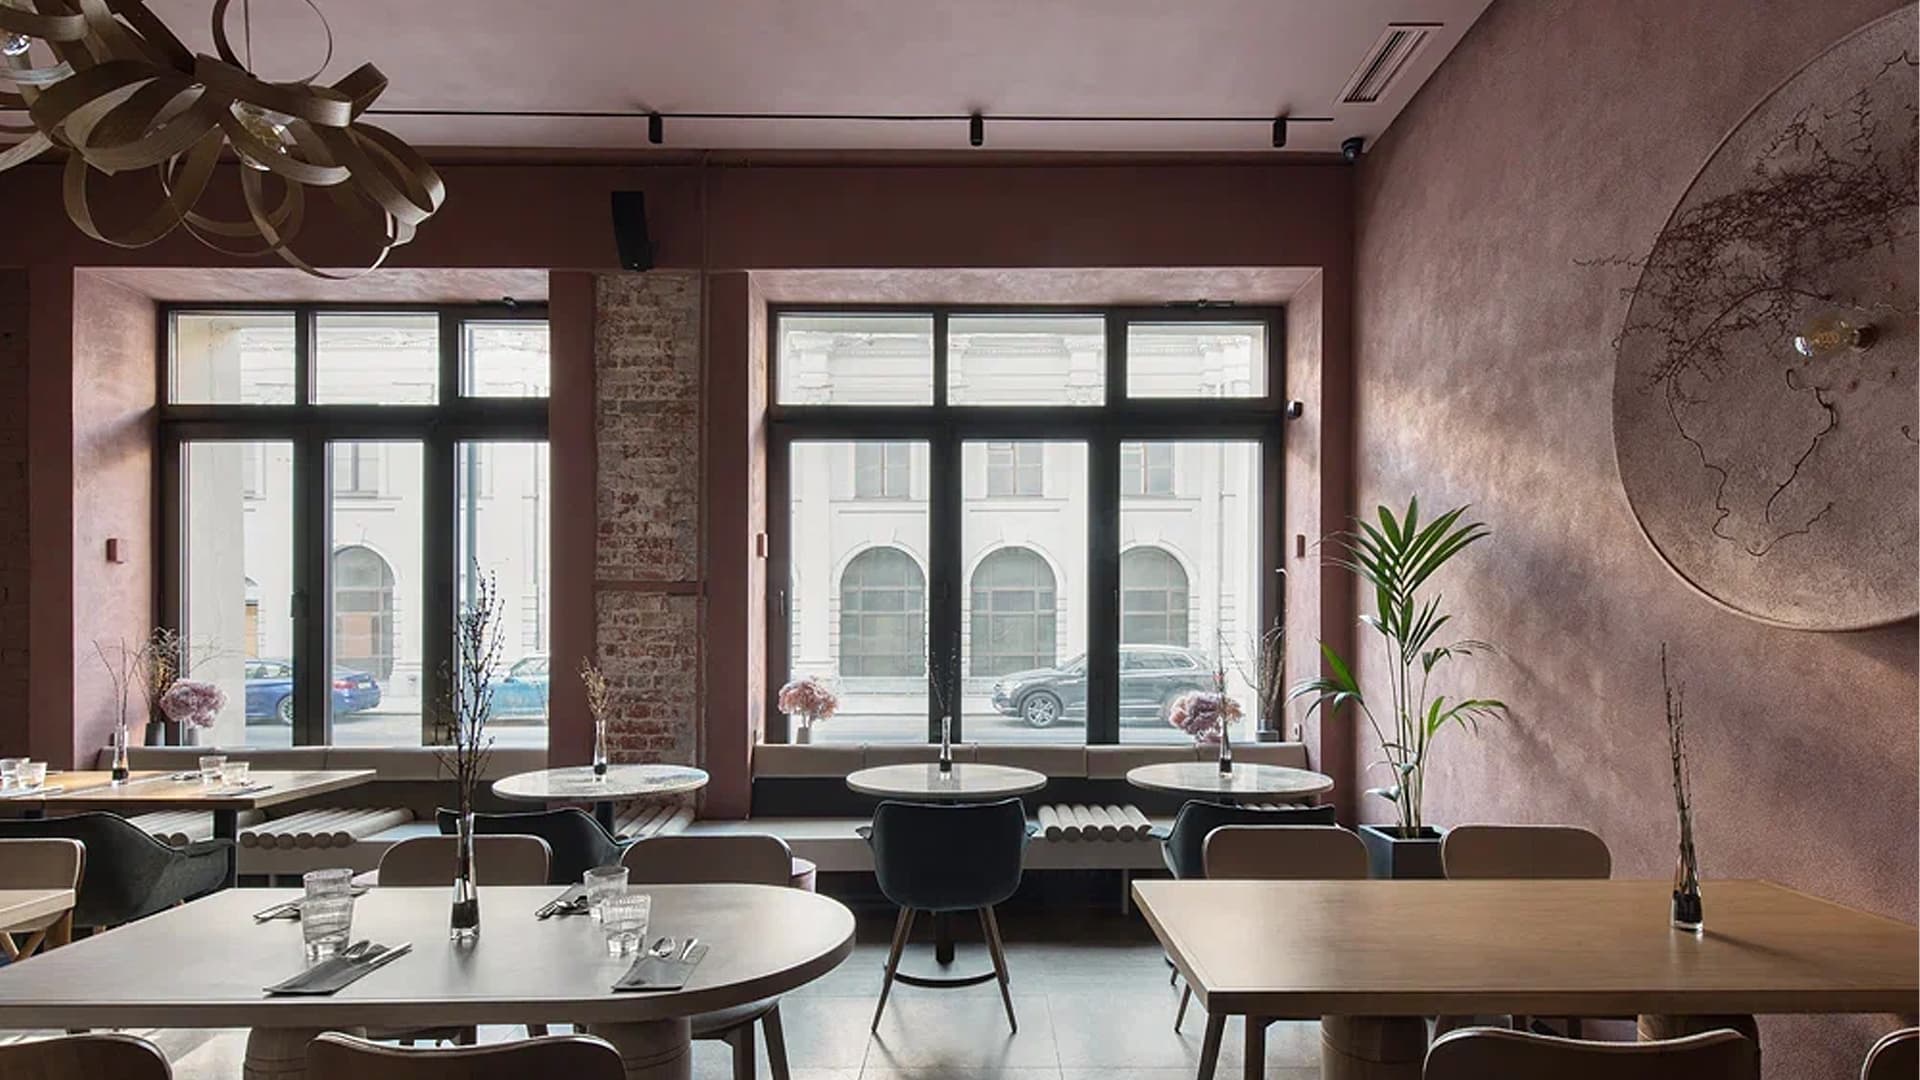 Романтичный интерьер кафе с фактурными кирпичными деталями – проект Соны Гамзян и Карины Авакян